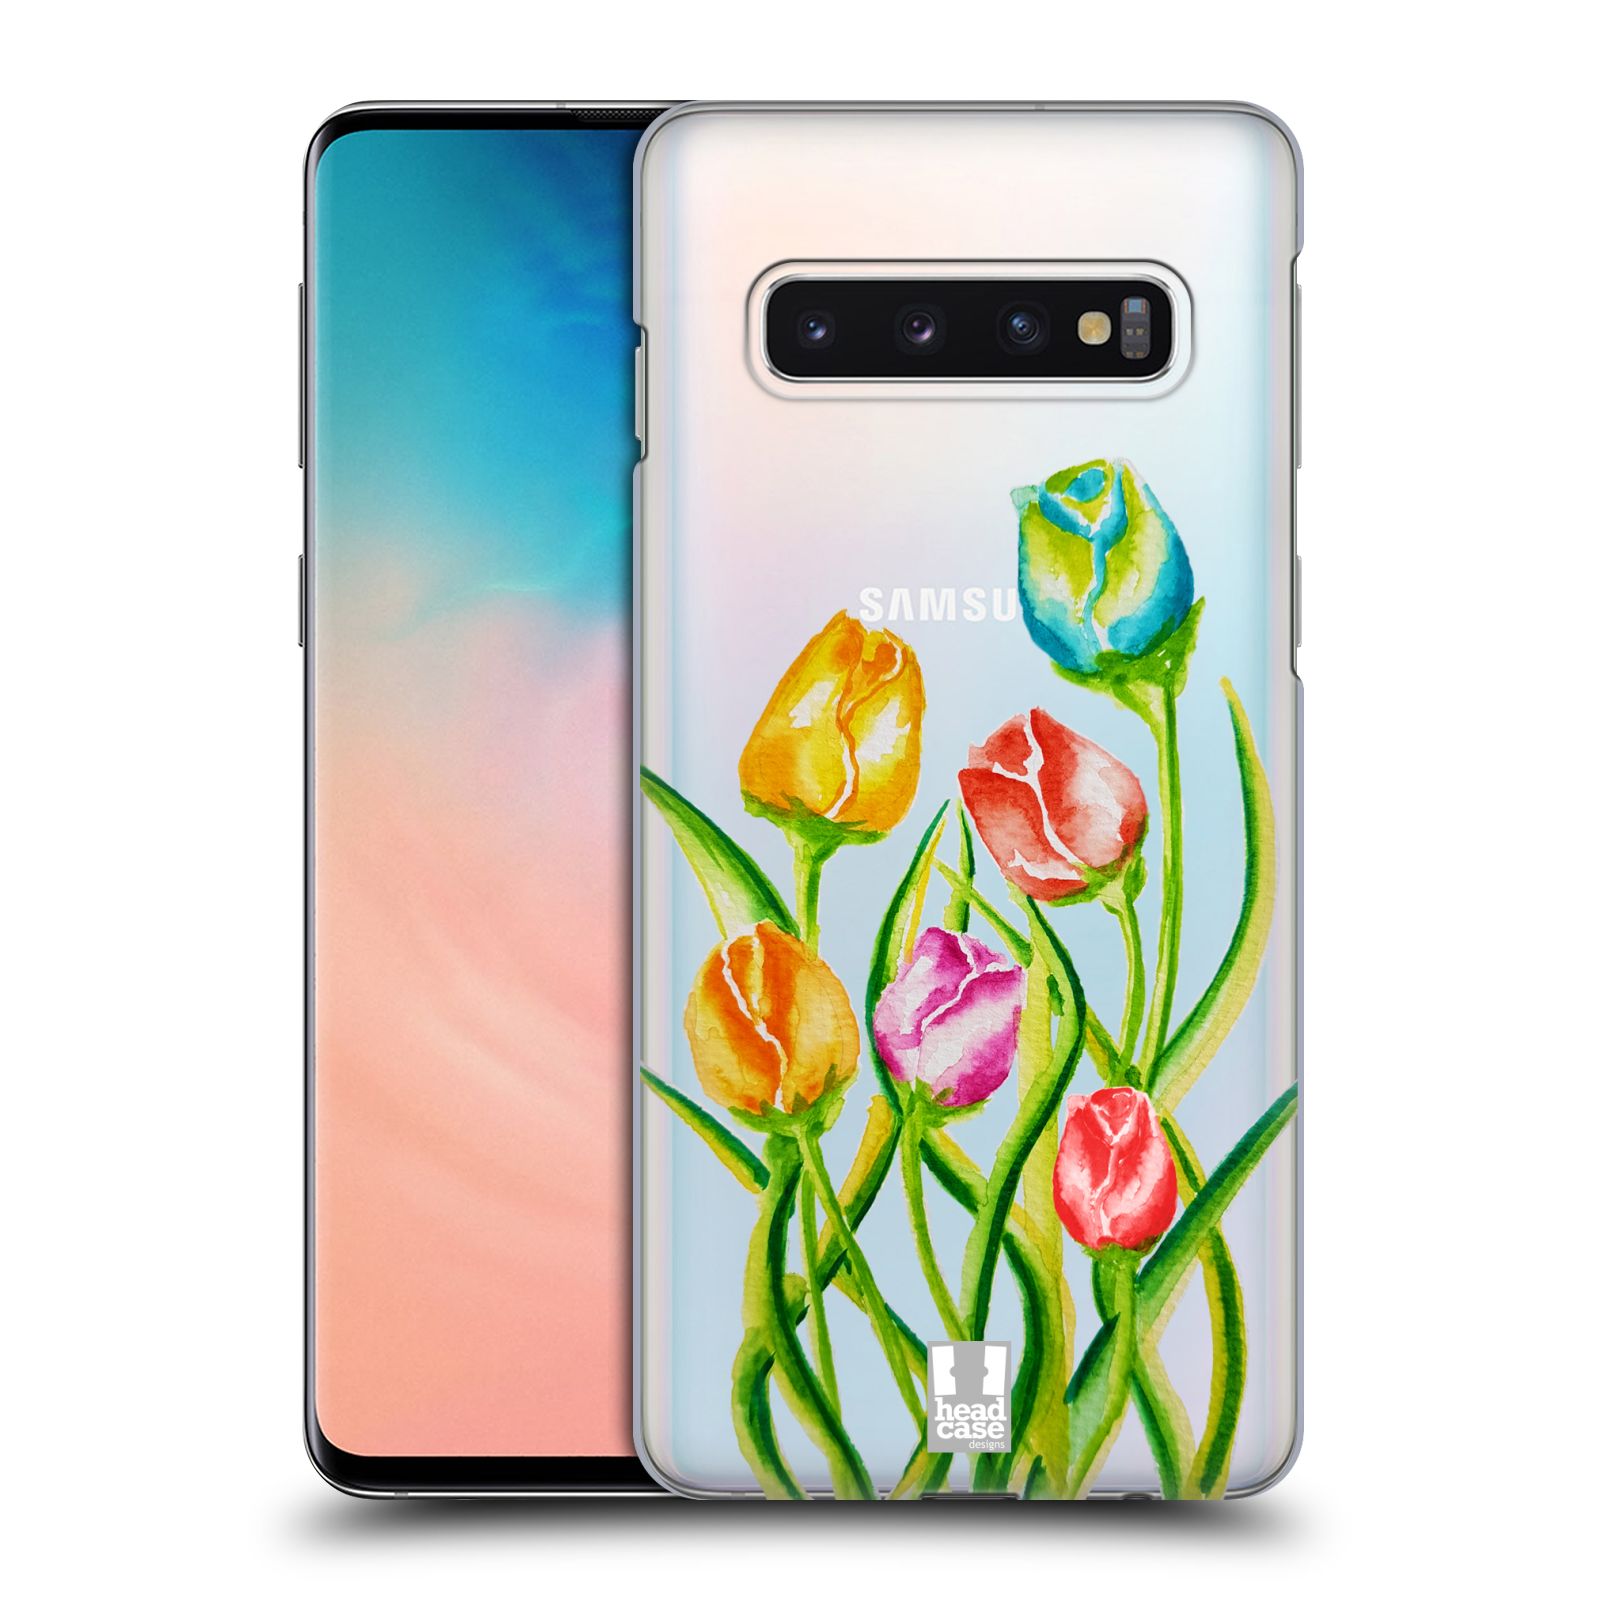 Pouzdro na mobil Samsung Galaxy S10 - HEAD CASE - Květina Tulipán vodní barvy